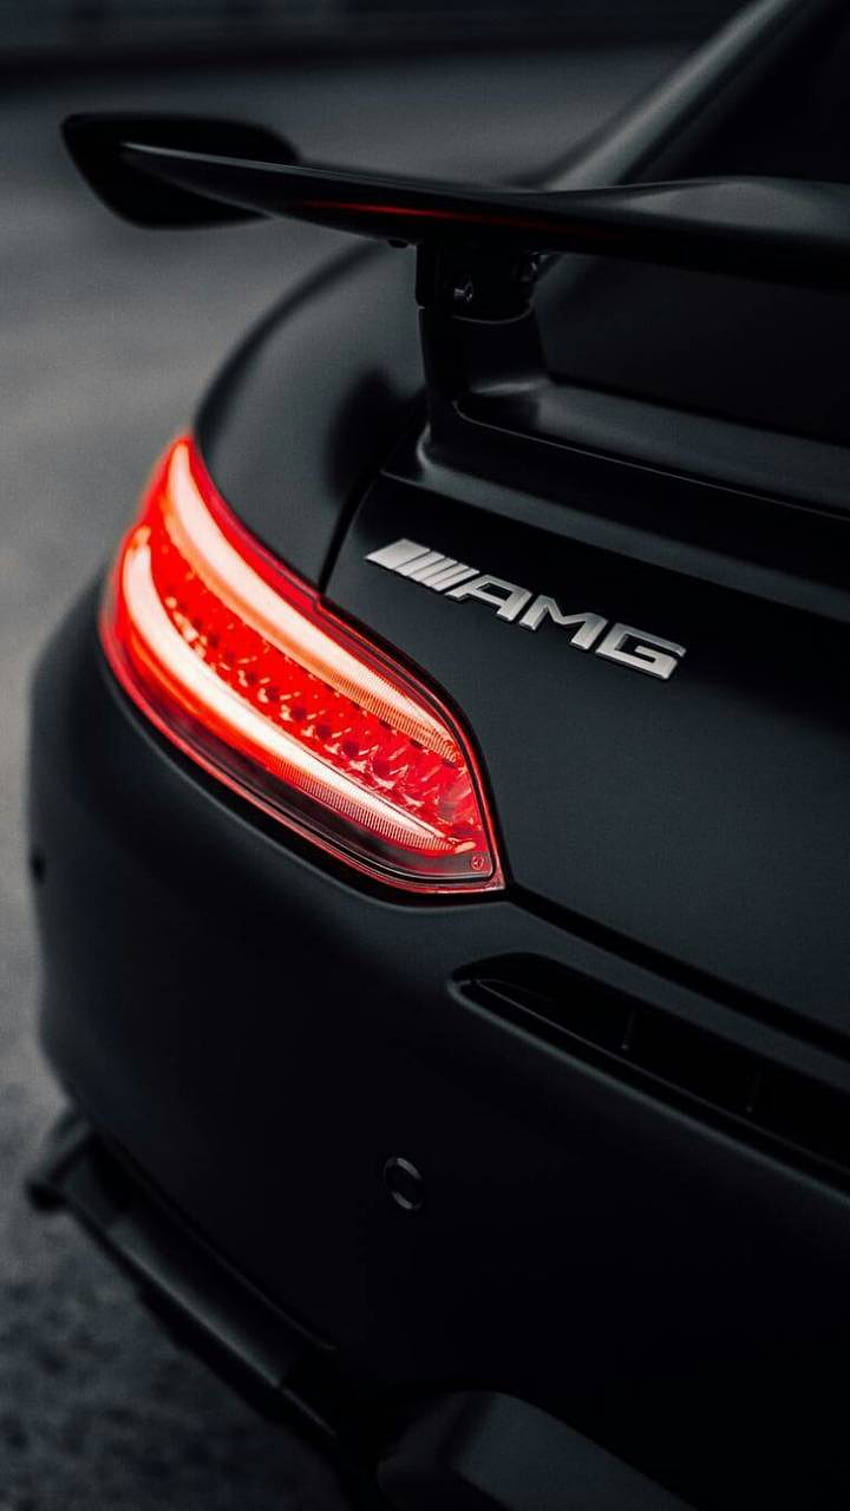 Bức tranh Mercedes phong cách sang trọng sẽ chắc chắn làm bạn say mê ngay từ cái nhìn đầu tiên. Với gam màu đen tuyền và logo xe hơi đầy uy lực, hình nền này sẽ làm tôn lên phong thái của chiếc điện thoại iOS của bạn.